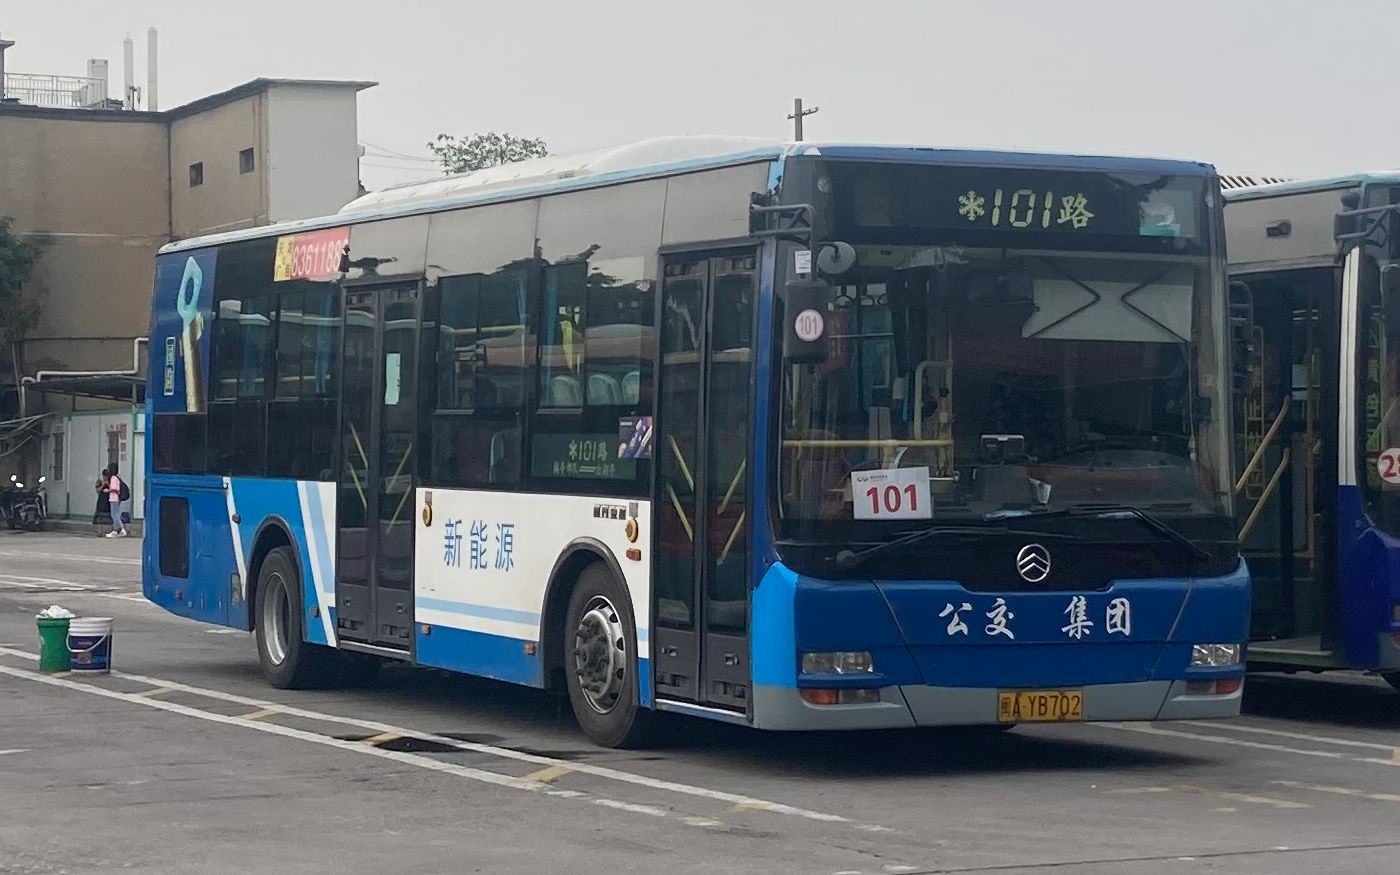 【纪念向】福州公交集团101路金旅xml6105jhevc8c型插电式混合动力